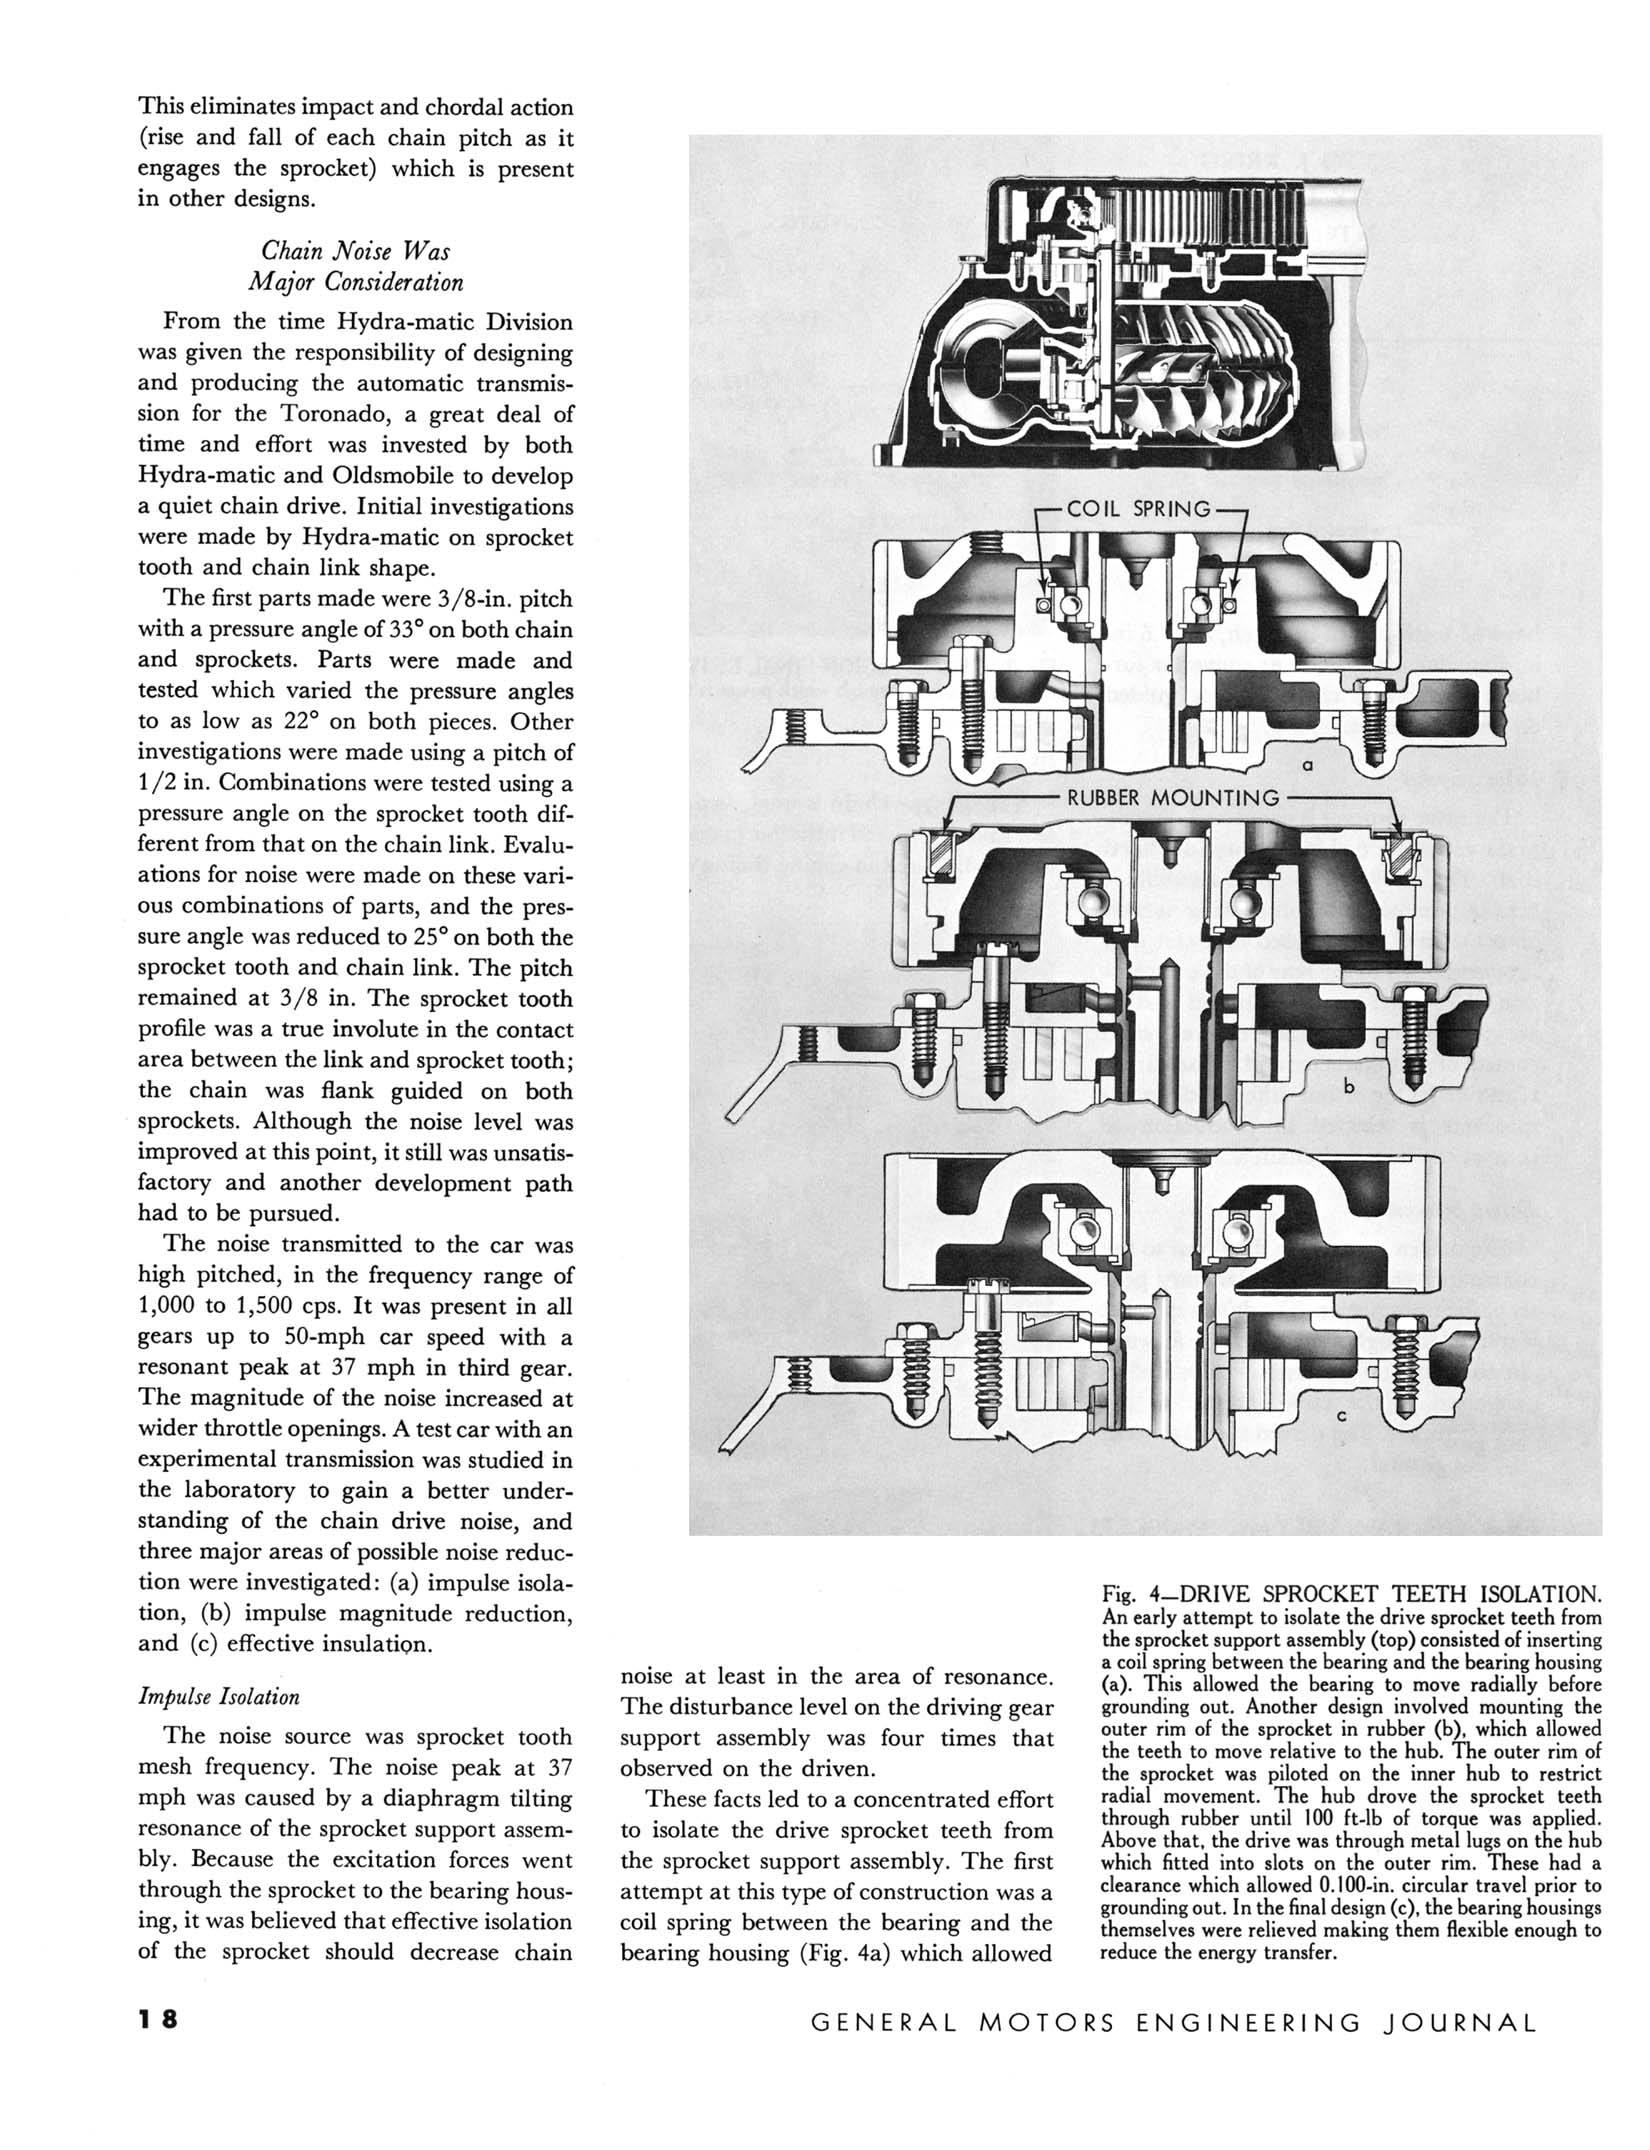 1966_GM_Eng_Journal_Qtr2-18